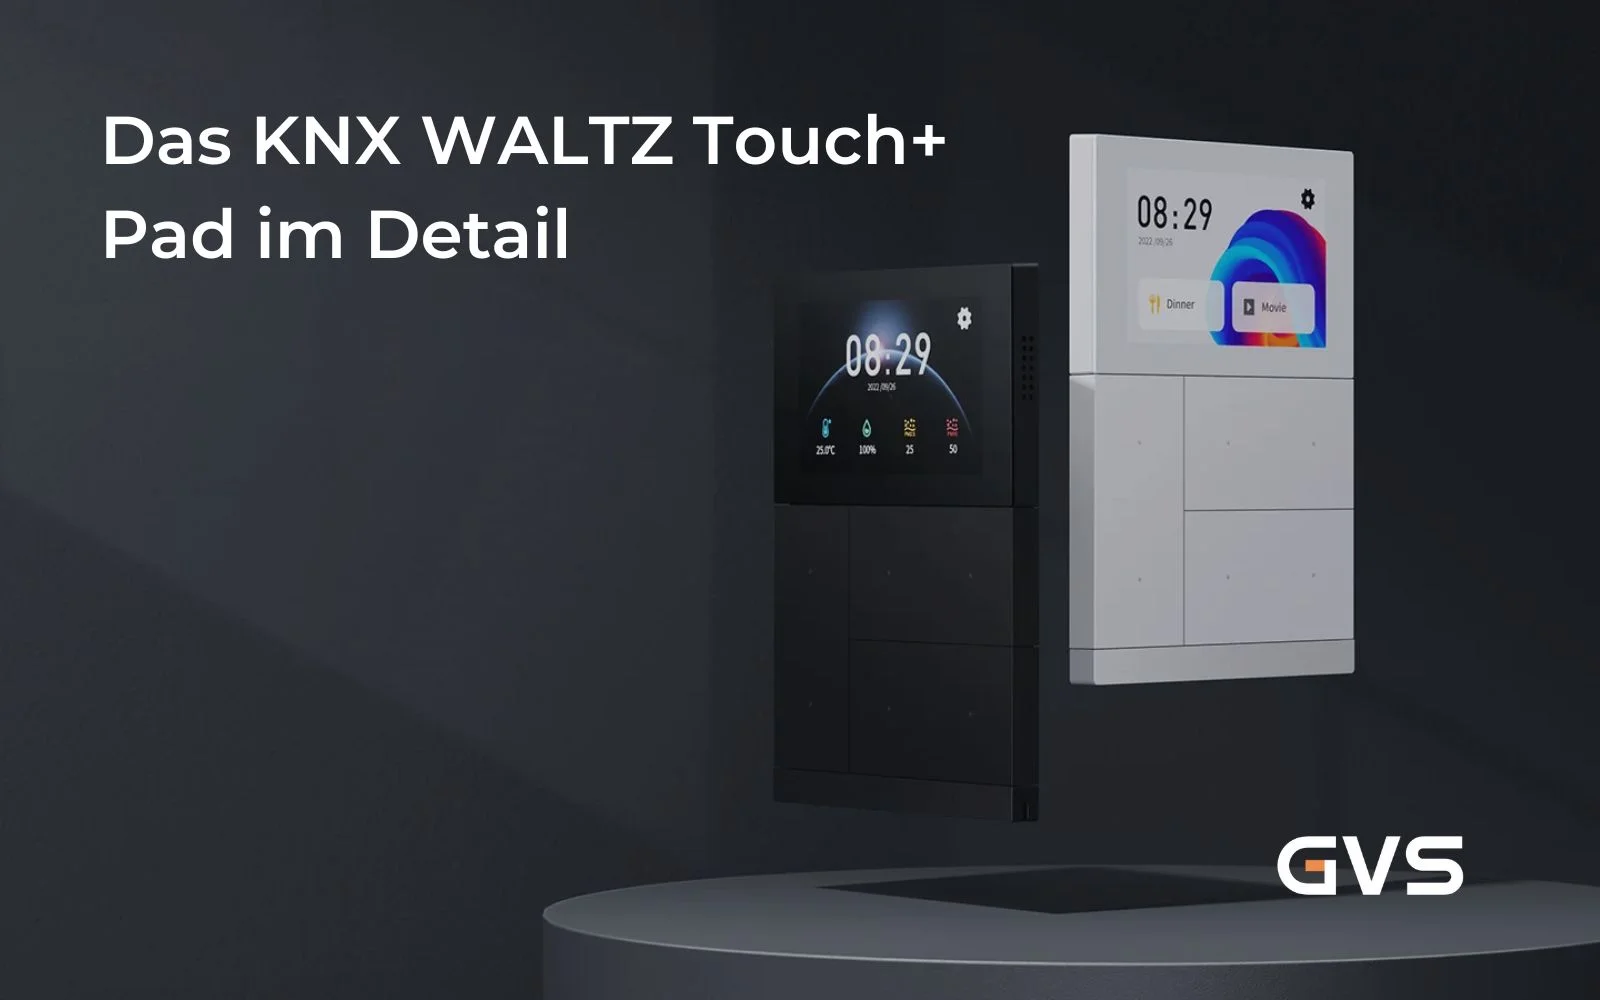 Das KNX WALTZ Touch+ Pad setzt neue Maßstäbe